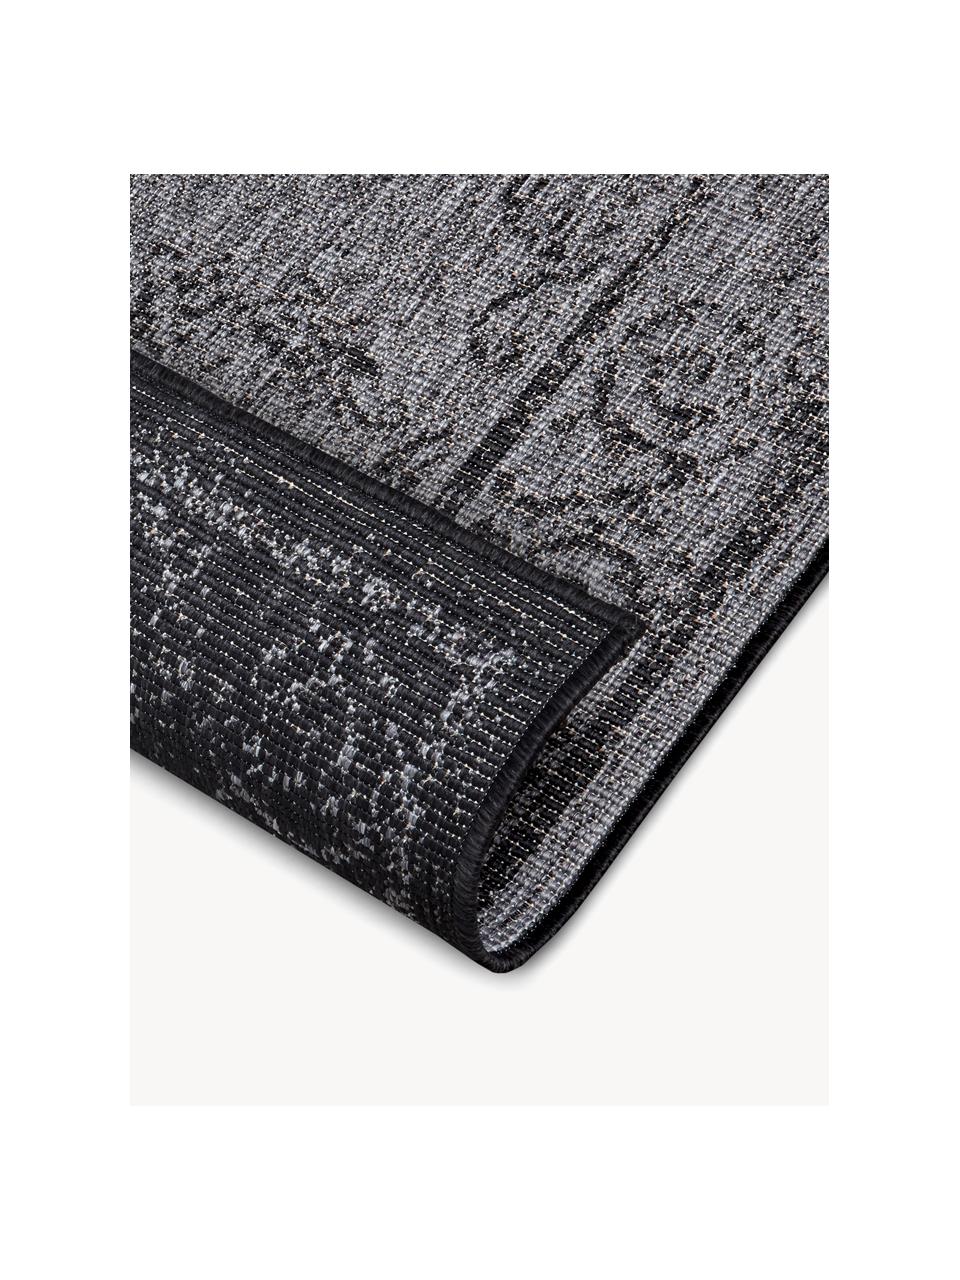 Interiérový/exteriérový oboustranný koberec Cebu, 100 % polypropylen

Materiál použitý v tomto produktu byl testován na škodlivé látky a certifikován podle STANDARD 100 od OEKO-TEX® 2210248, OEKO-TEX Service GmbH., Tmavě šedá, antracitová, Š 80 cm, D 150 cm (velikost XS)